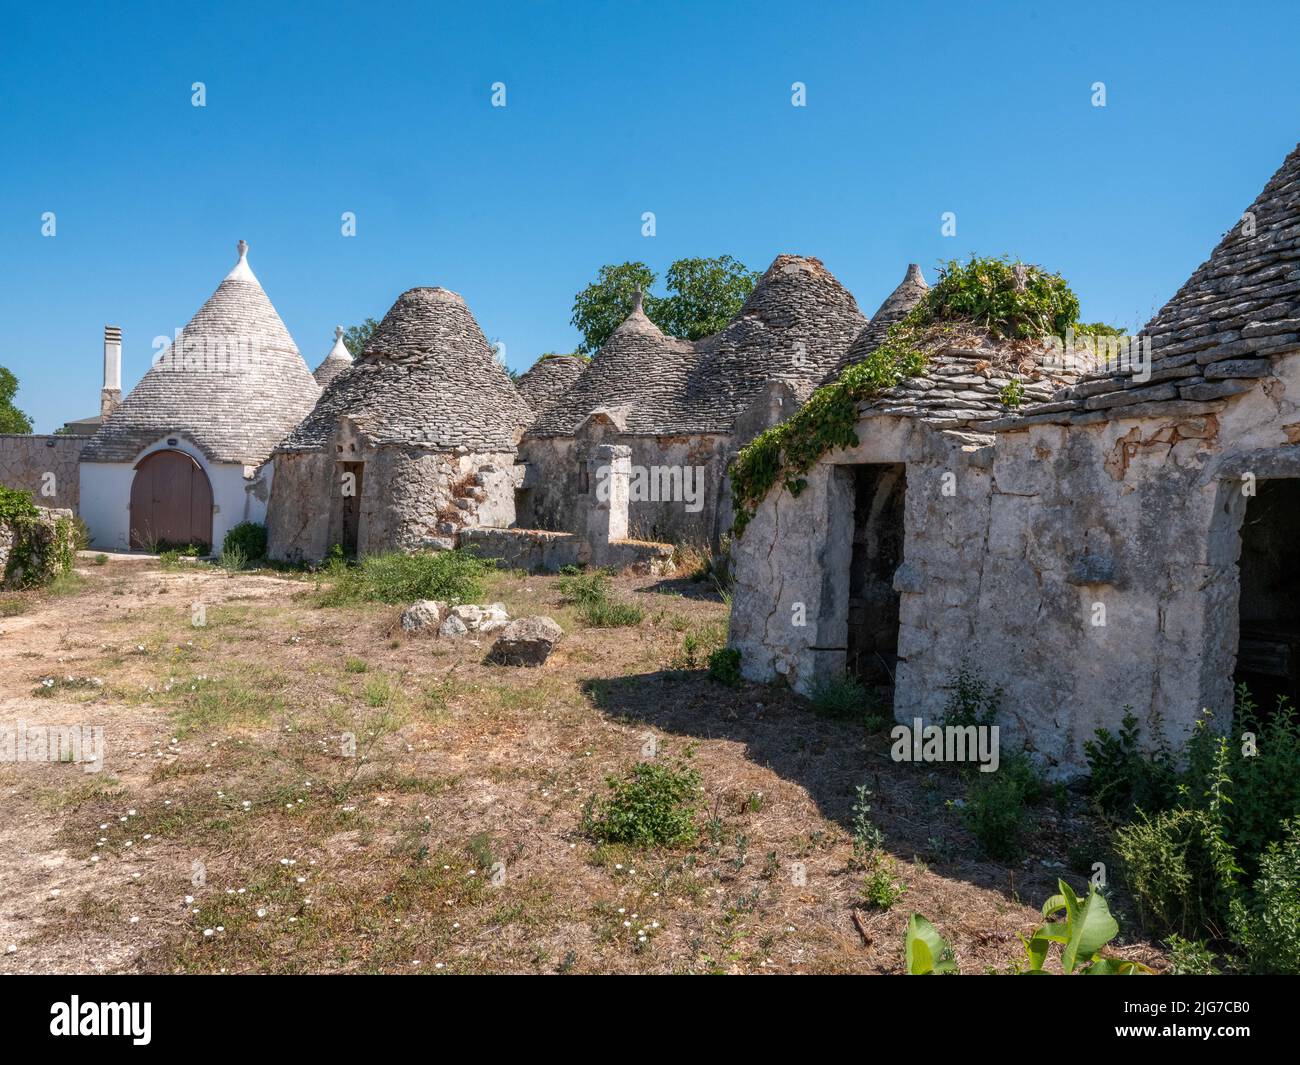 Maisons Trulli de la région Alberobello de Puglia avec des toits coniques originaires des temps préhistoriques faits de blocs de calcaire et sans mortier Banque D'Images